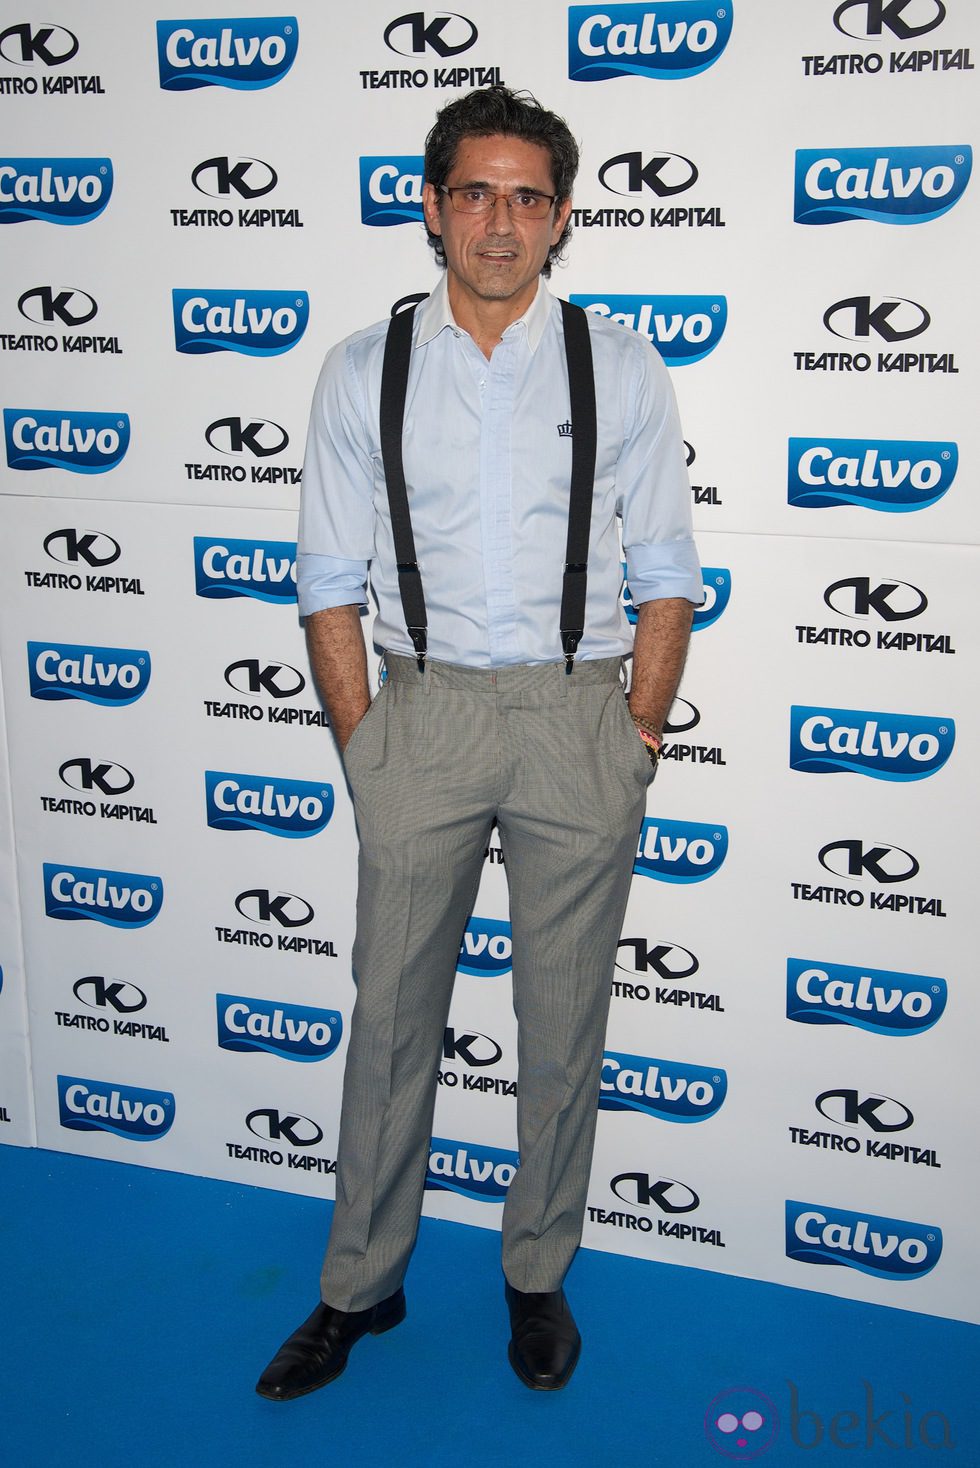 Jesús Cabanas en la presentación del Team Calvo 2014 en Madrid